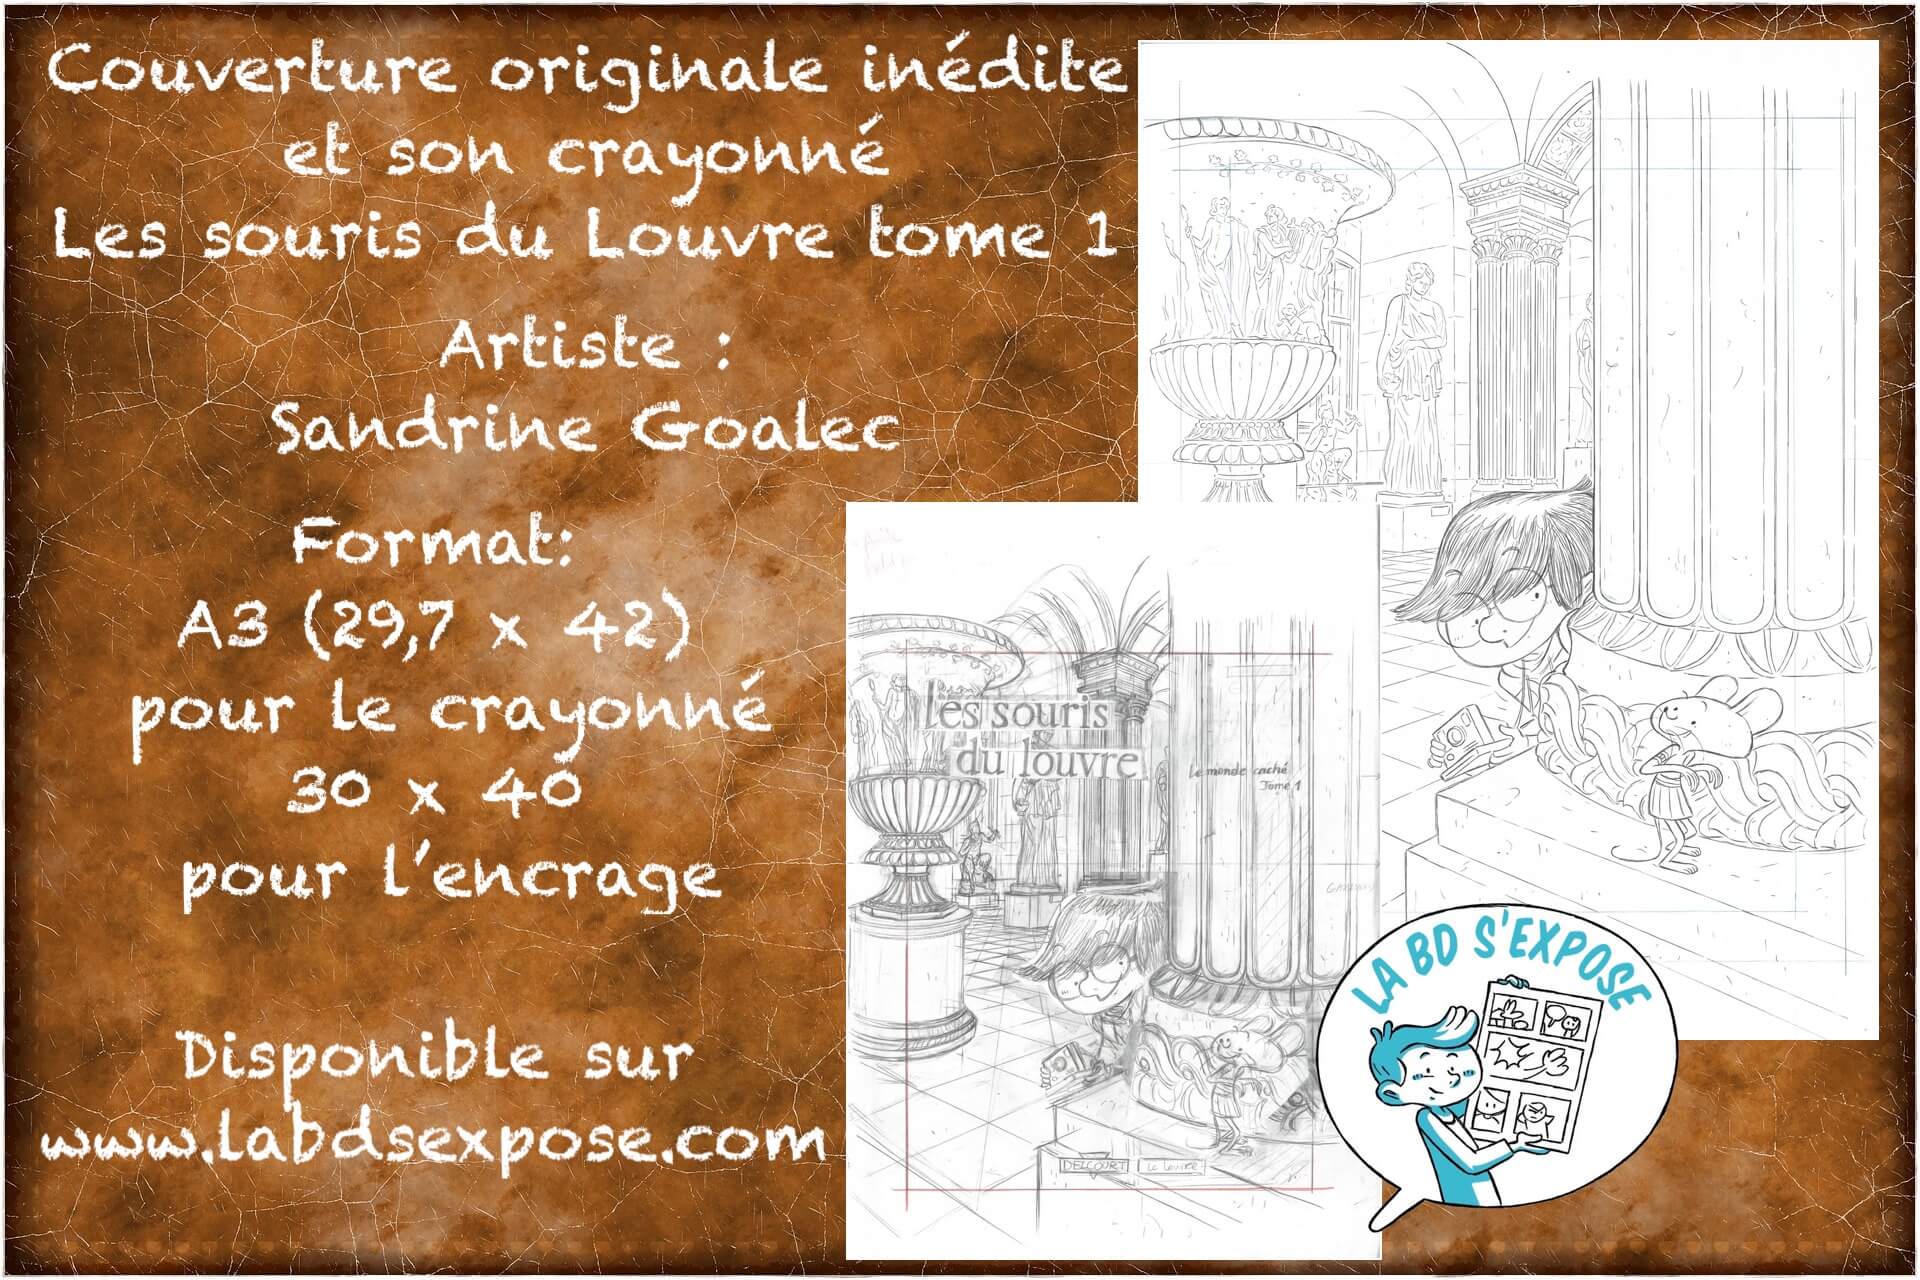 Planche originale de bandes dessinee couverture inédite Les souris du Louvre tome 1 Sandrine Goalec La BD s'expose